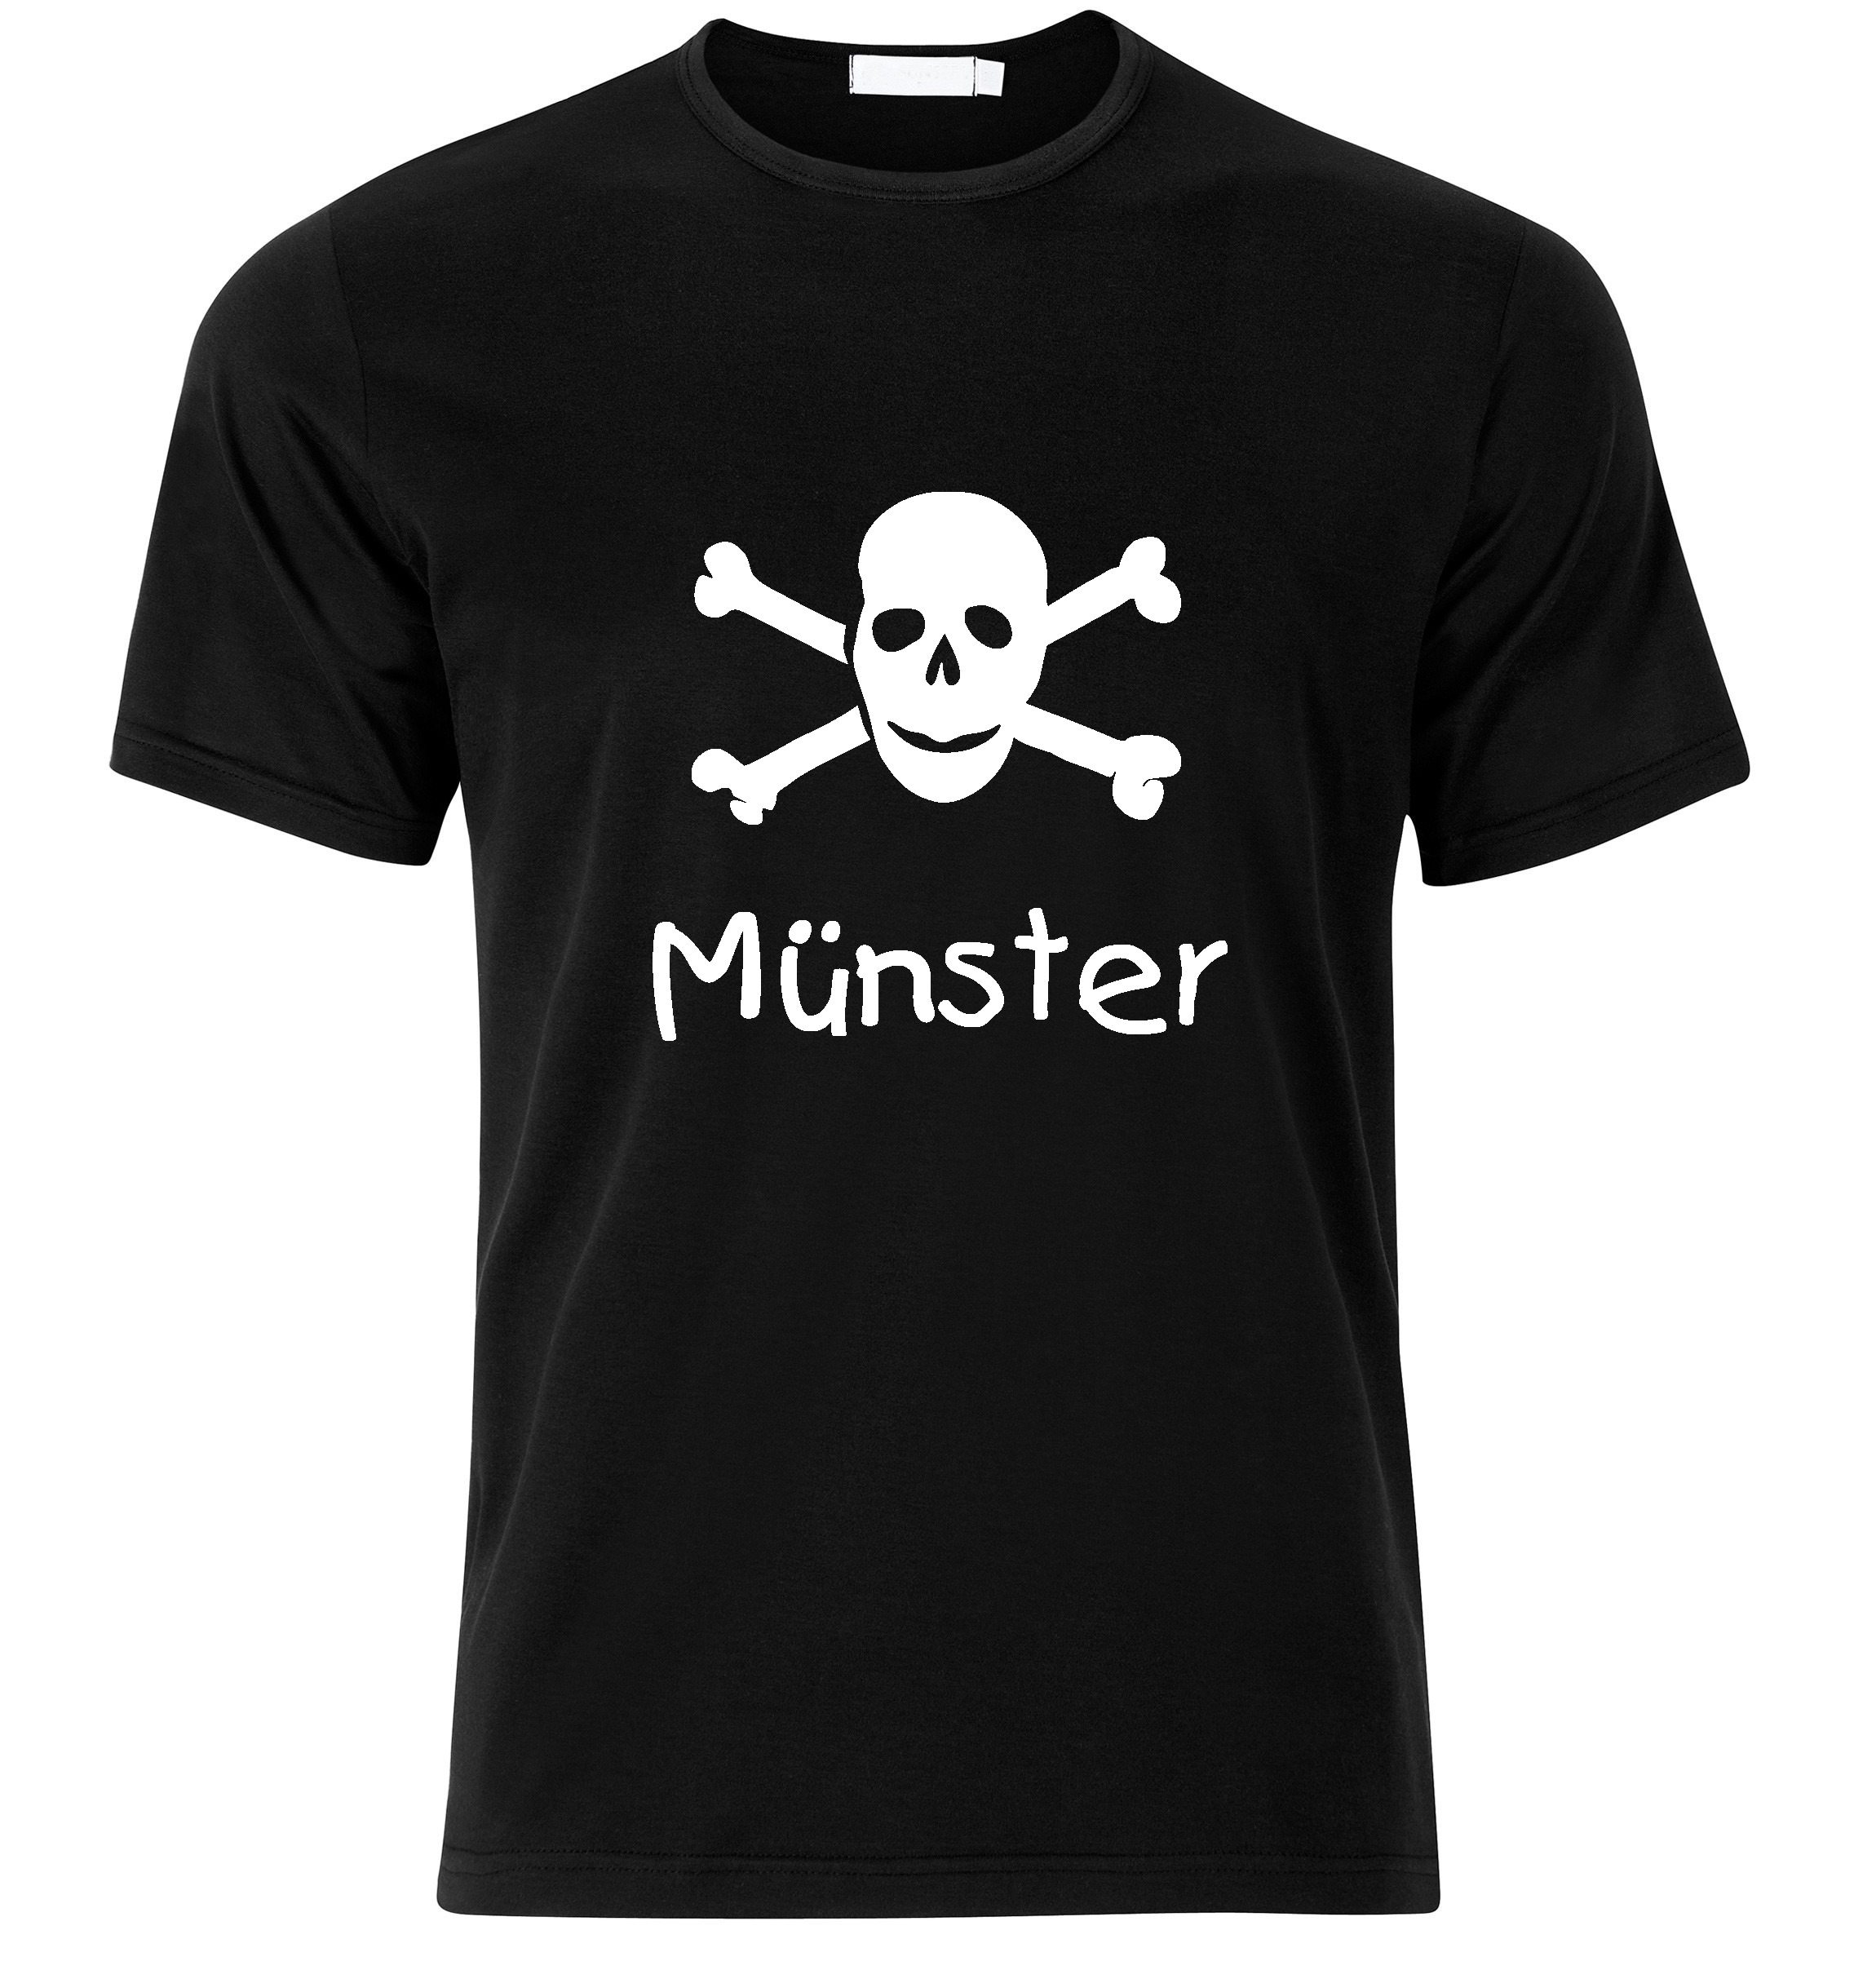 T-Shirt Münster Jolly Roger, Totenkopf